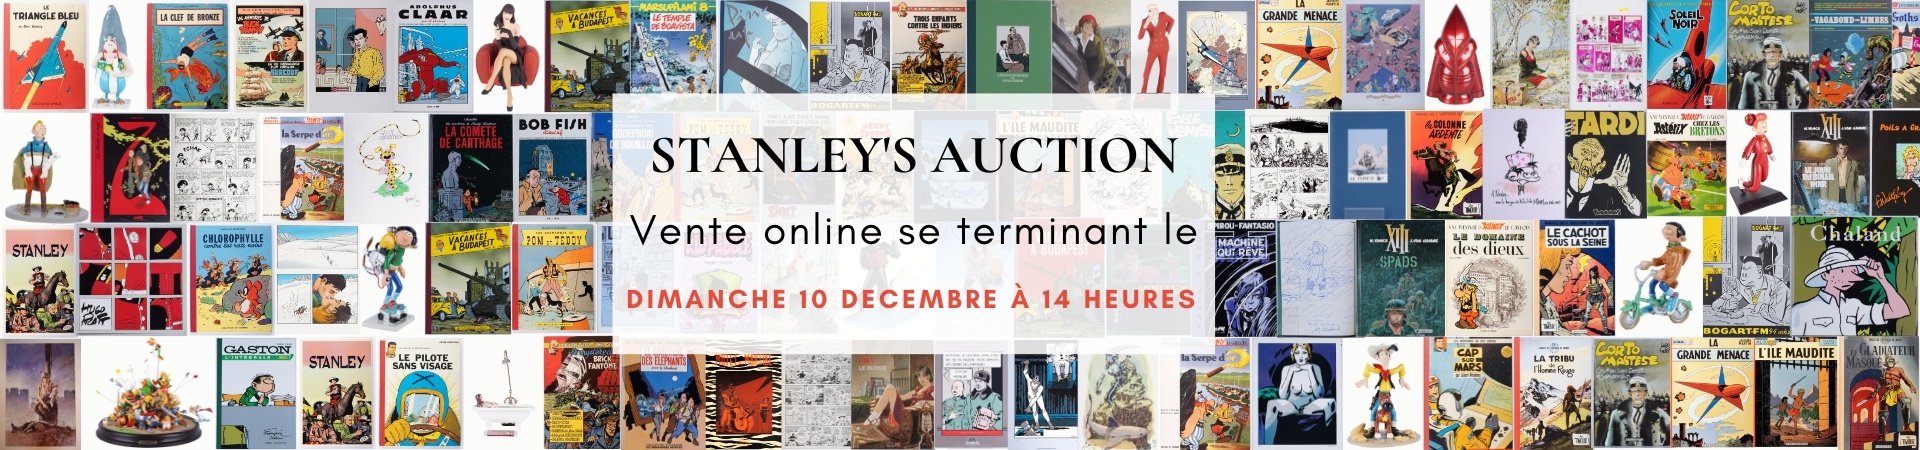 Vente aux enchères - Stanley's auction